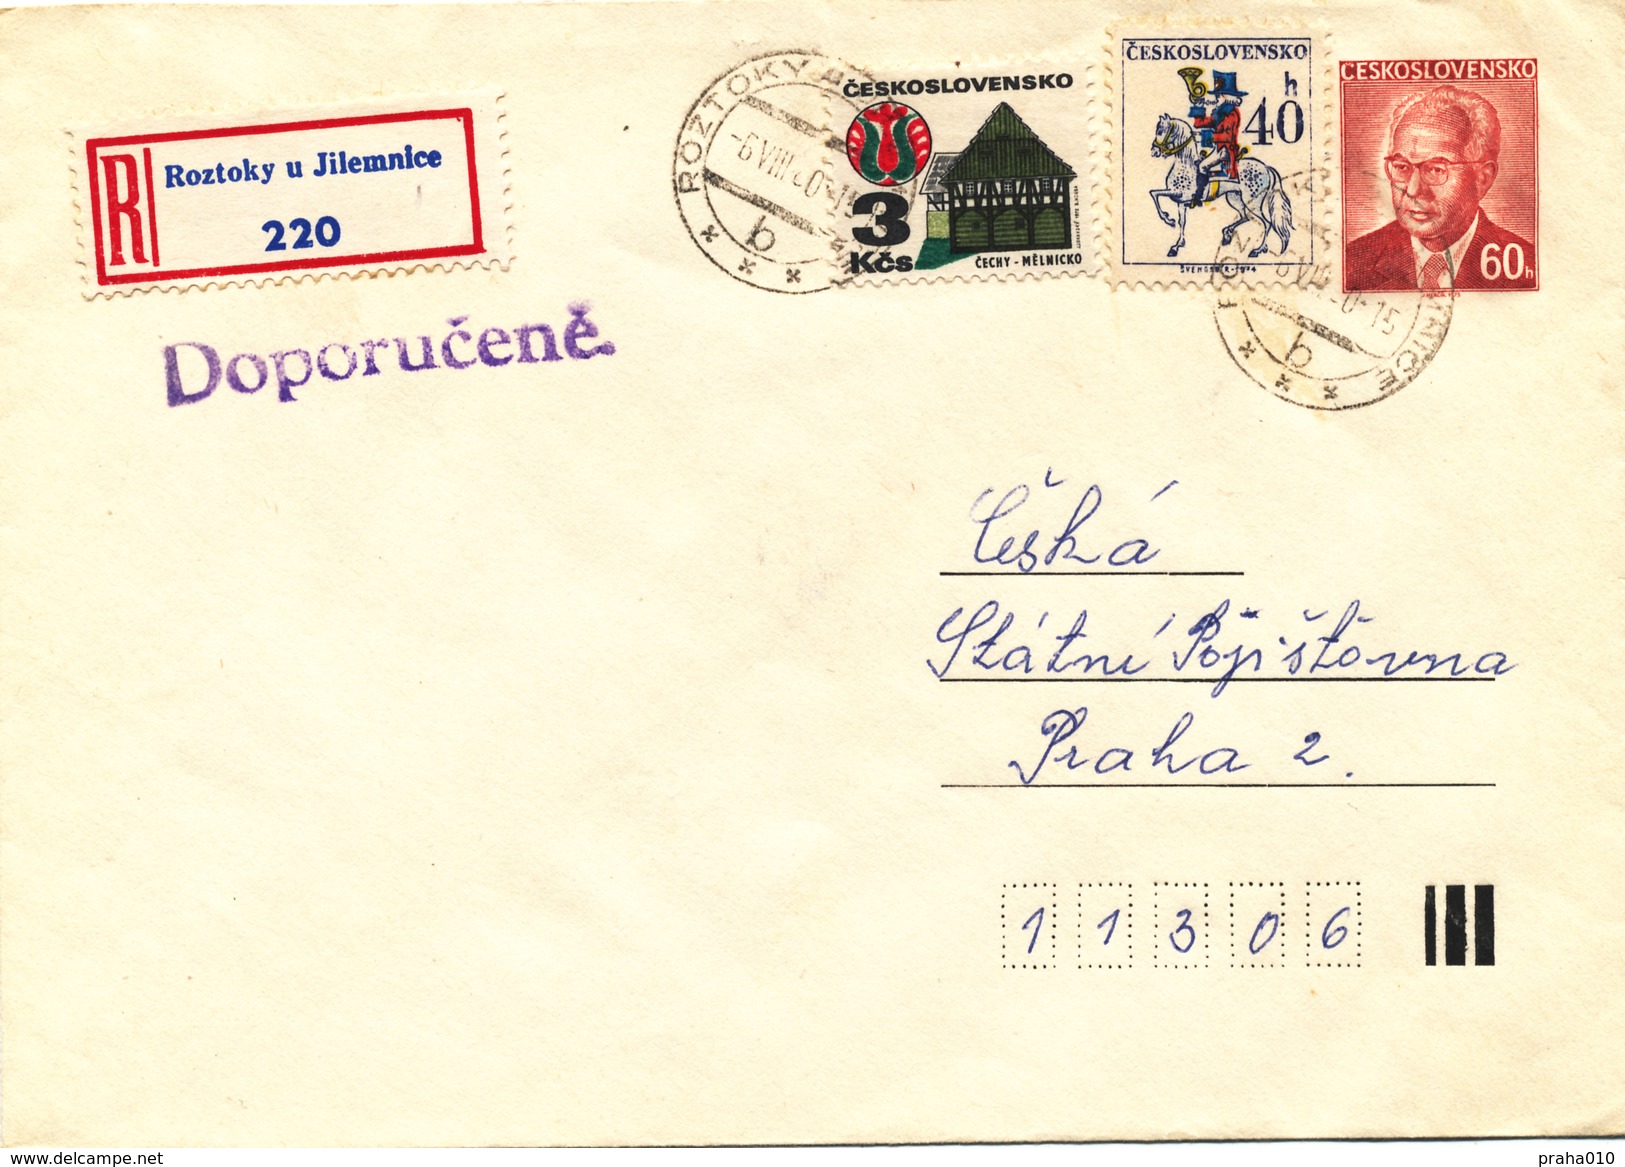 L3503 - Czechoslovakia (1980) Roztoky U Jilemnice (Postal Stationery) R-letter; Tariff: 4,00 Kcs - Enveloppes